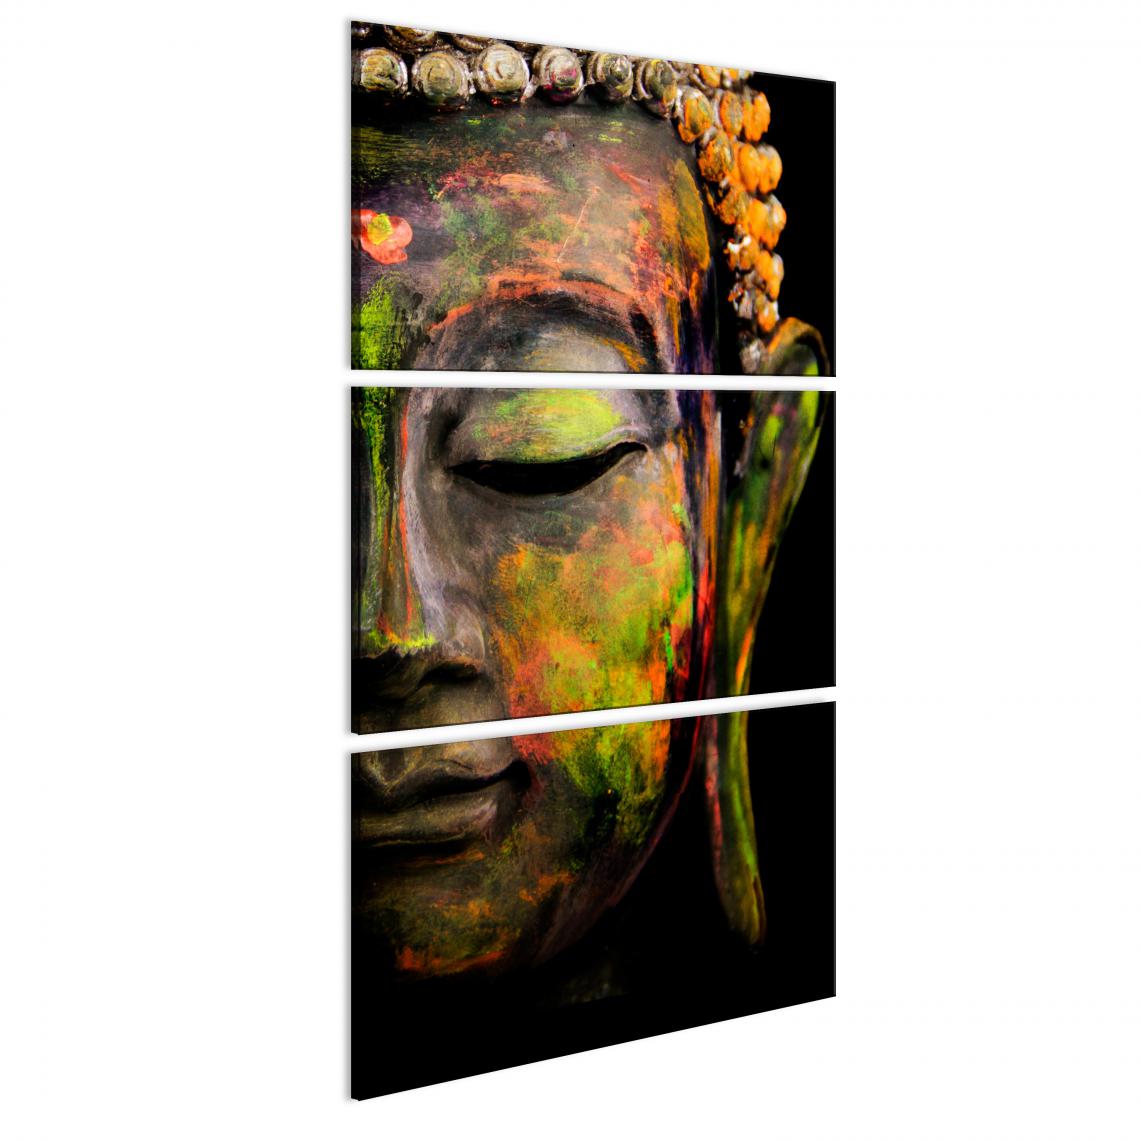 Decoshop26 - Tableau sur toile en 4 panneaux décoration murale image imprimée cadre en bois à suspendre Grand Bouddha I 60x120 cm 11_0009174 - Tableaux, peintures